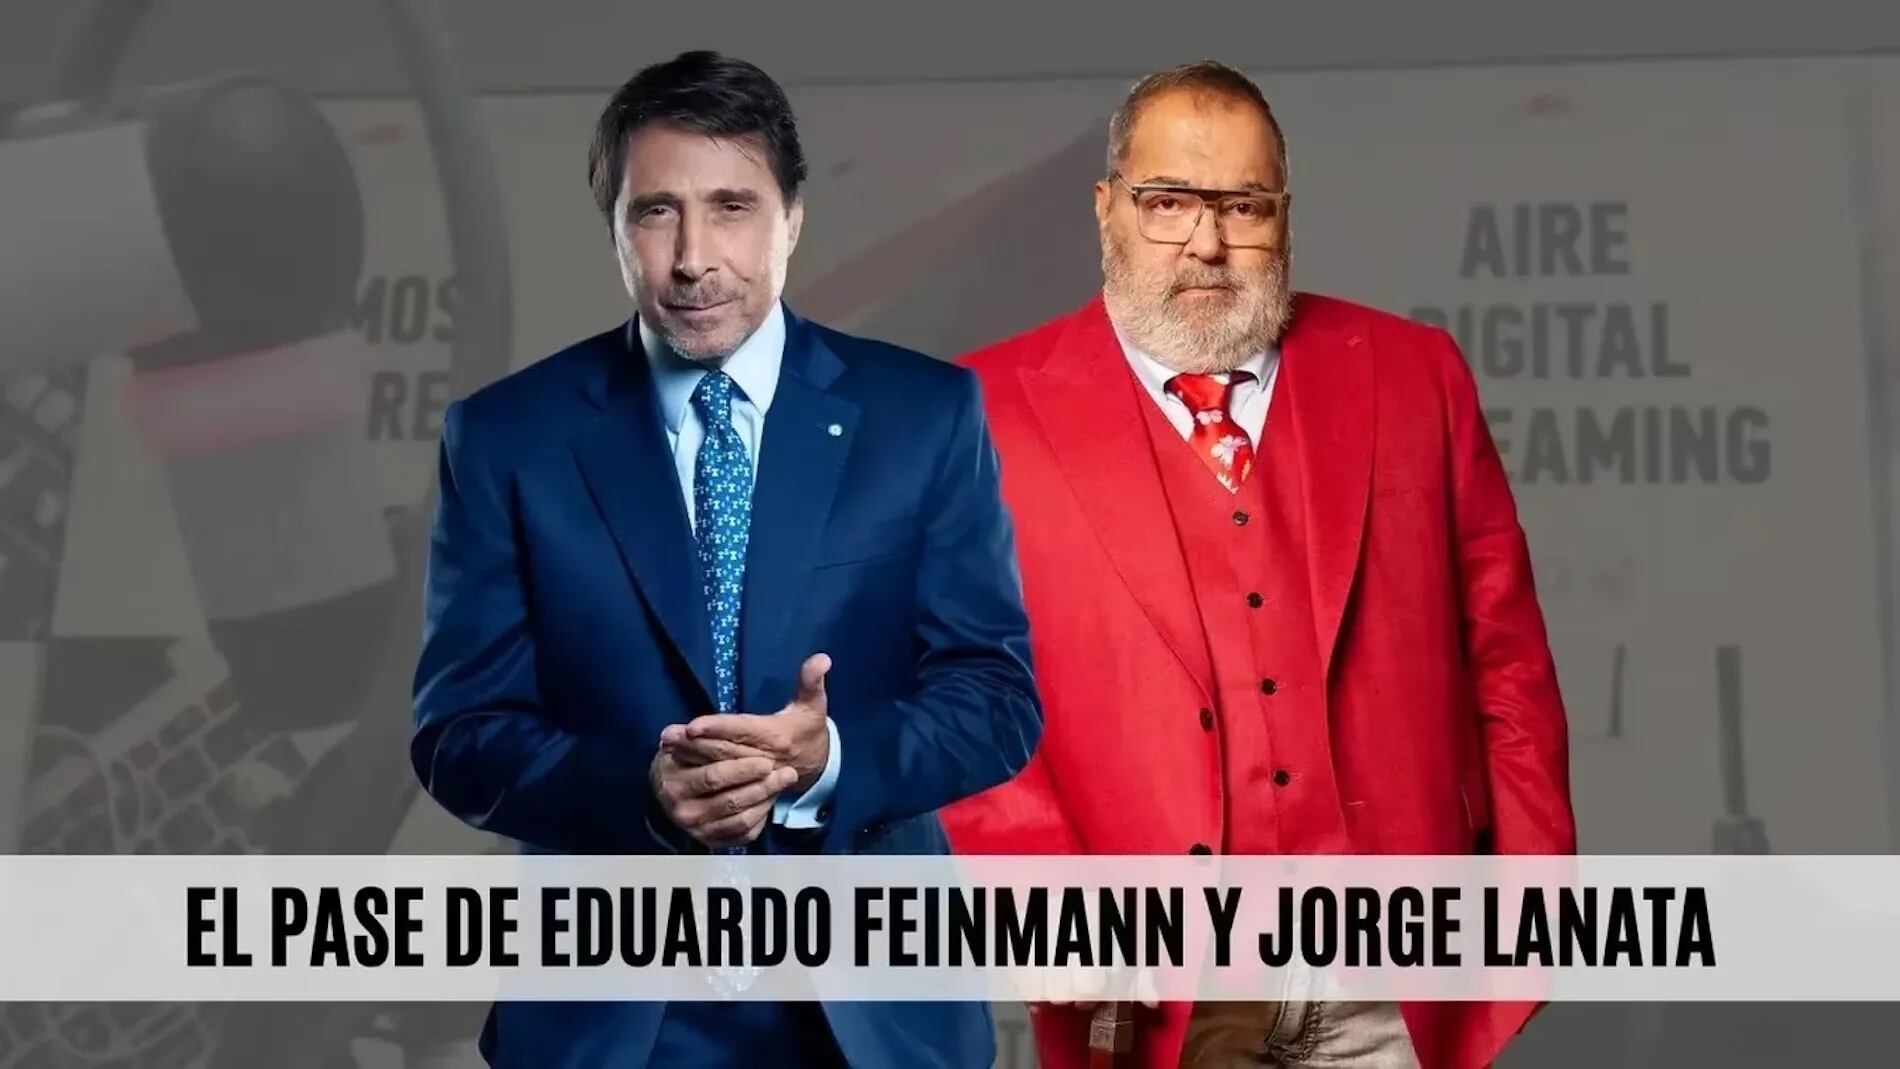 El regreso de Jorge Lanata a El Pase con Eduardo Feinmann: “Quiéranse, no pierdan el tiempo”